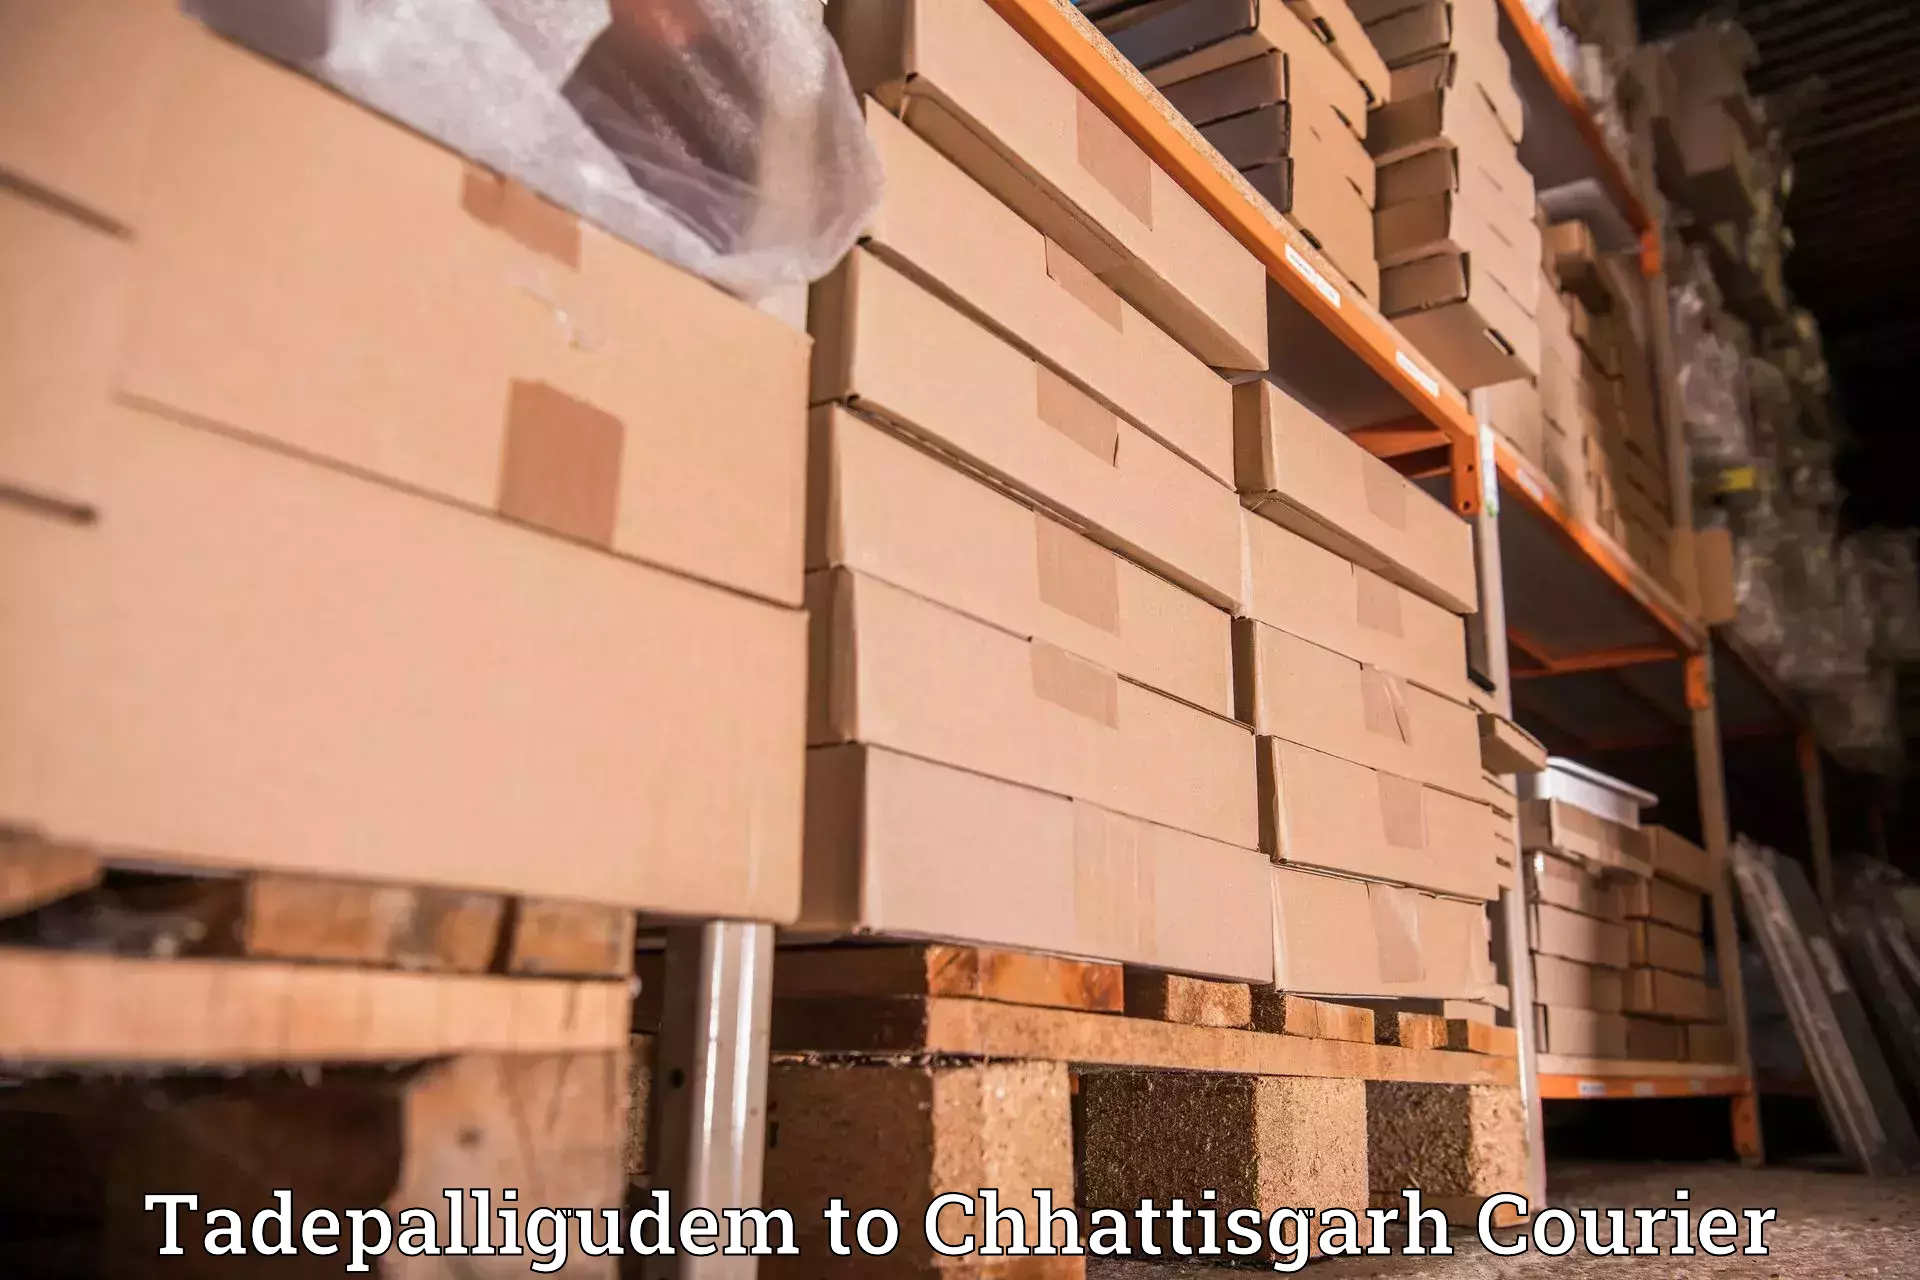 Efficient shipping platforms Tadepalligudem to Bijapur Chhattisgarh